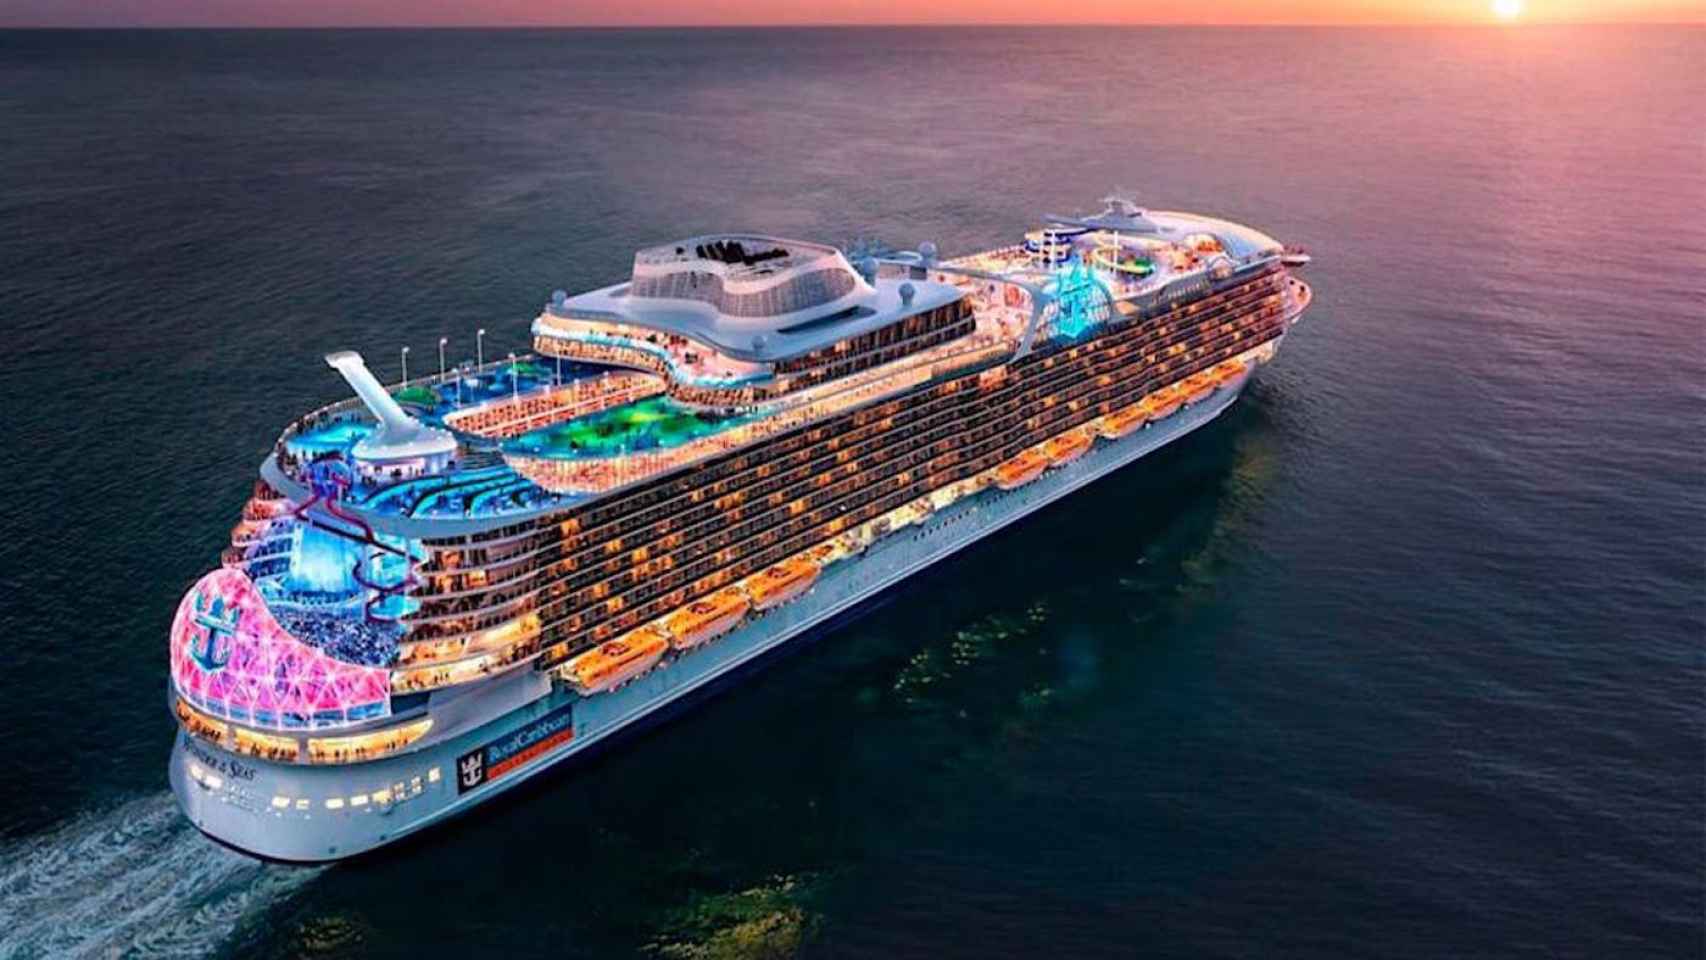 El crucero más grande del mundo, el Wonder of the seas, en una imagen promocional / ROYAL CARIBBEAN